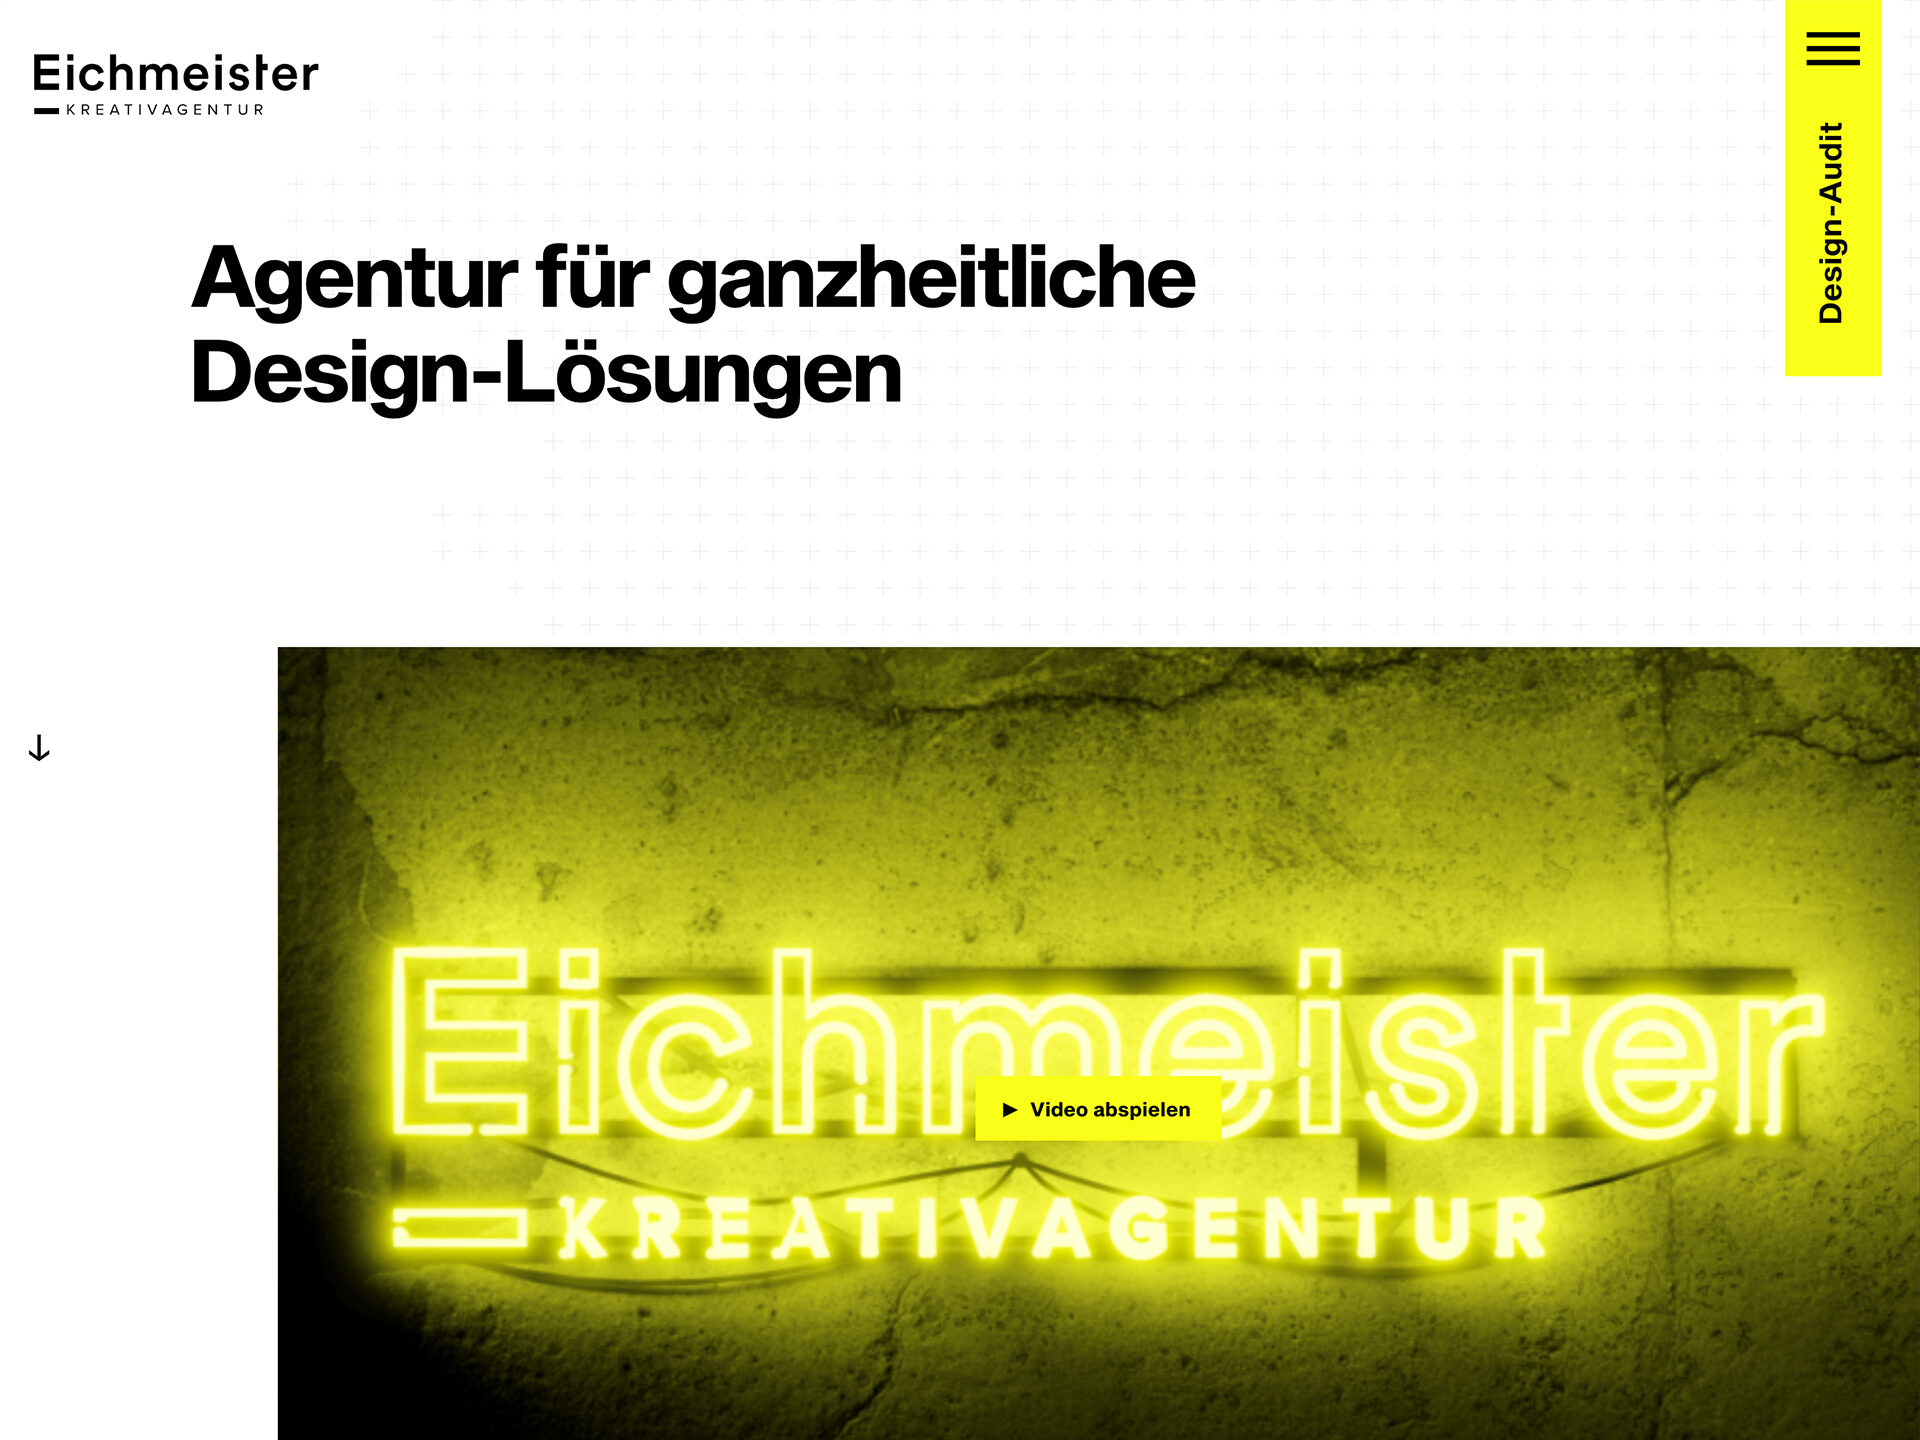 Eichmeister Kreativagentur ()